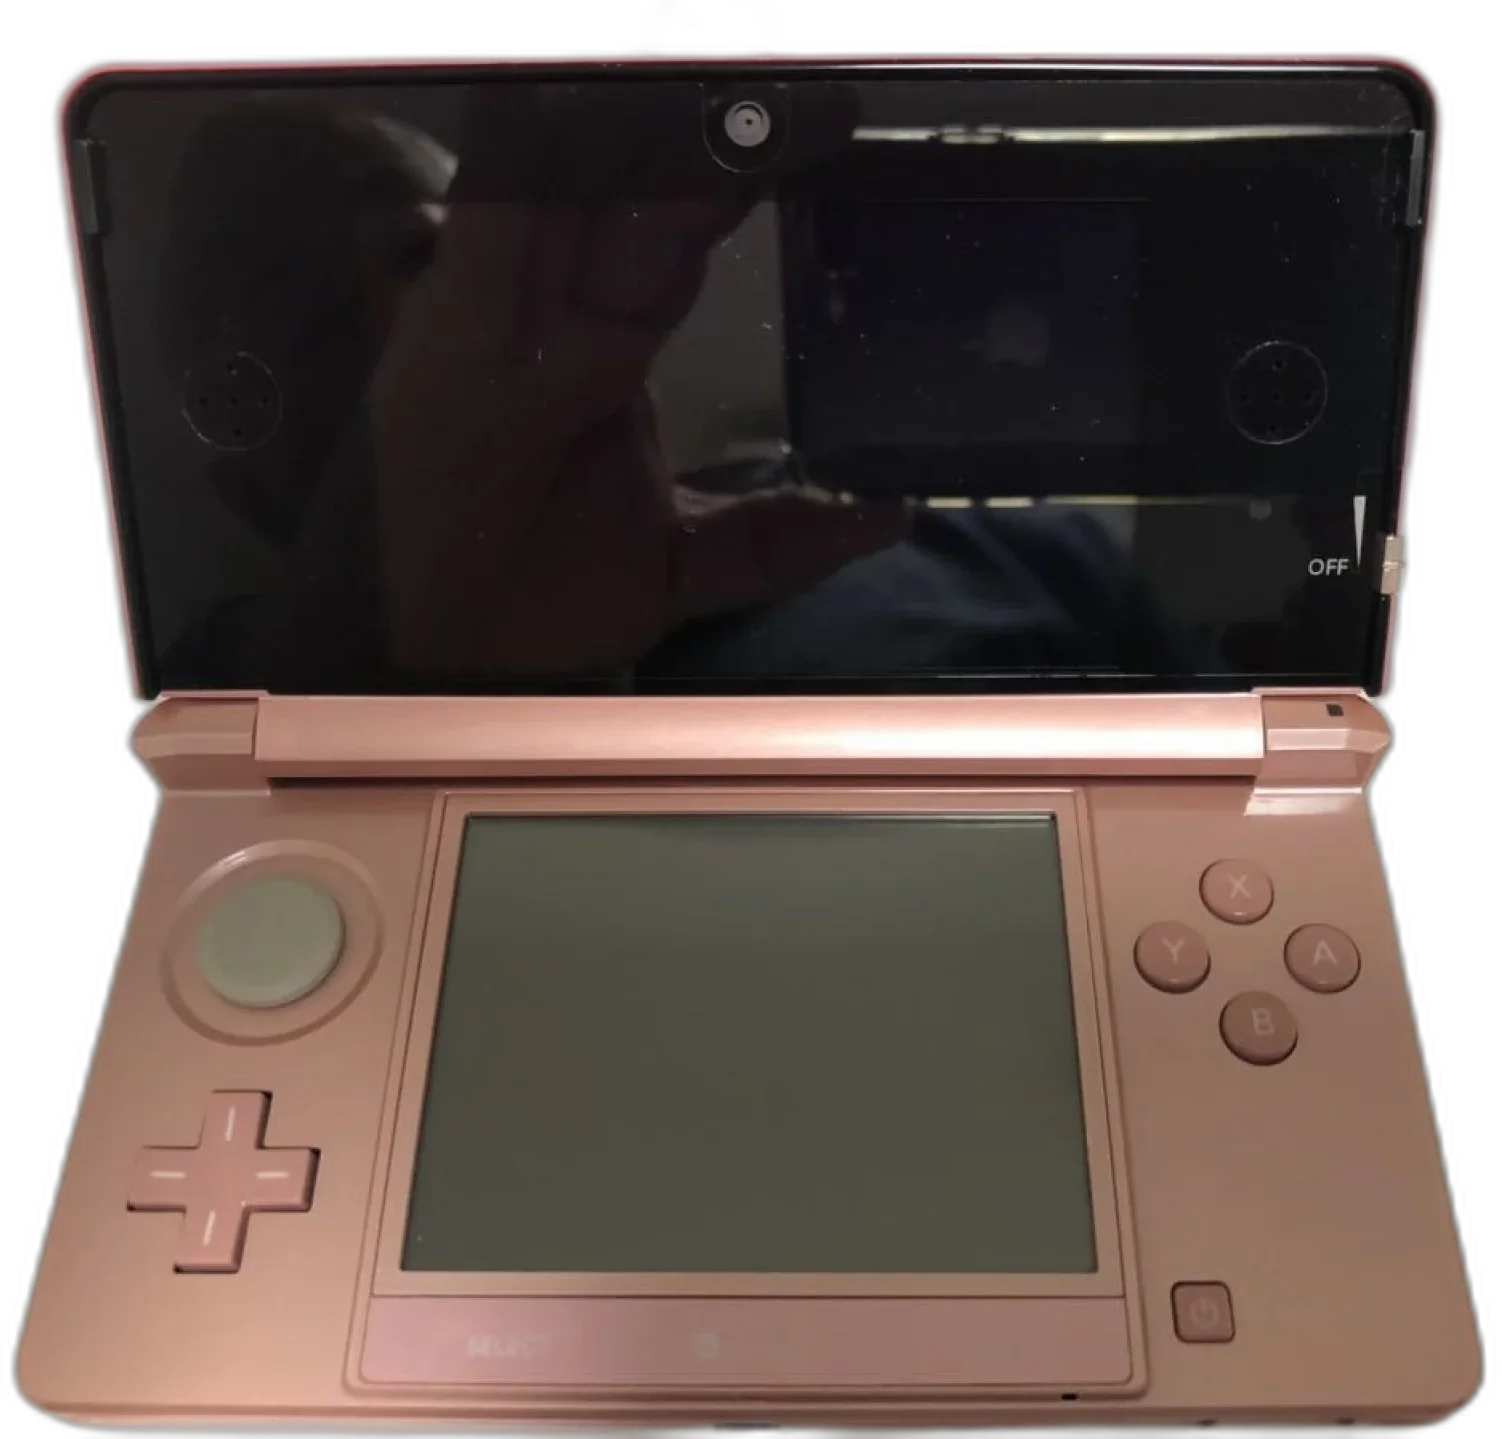  Nintendo 3DS Club Nintendo Peach Console [AUS]